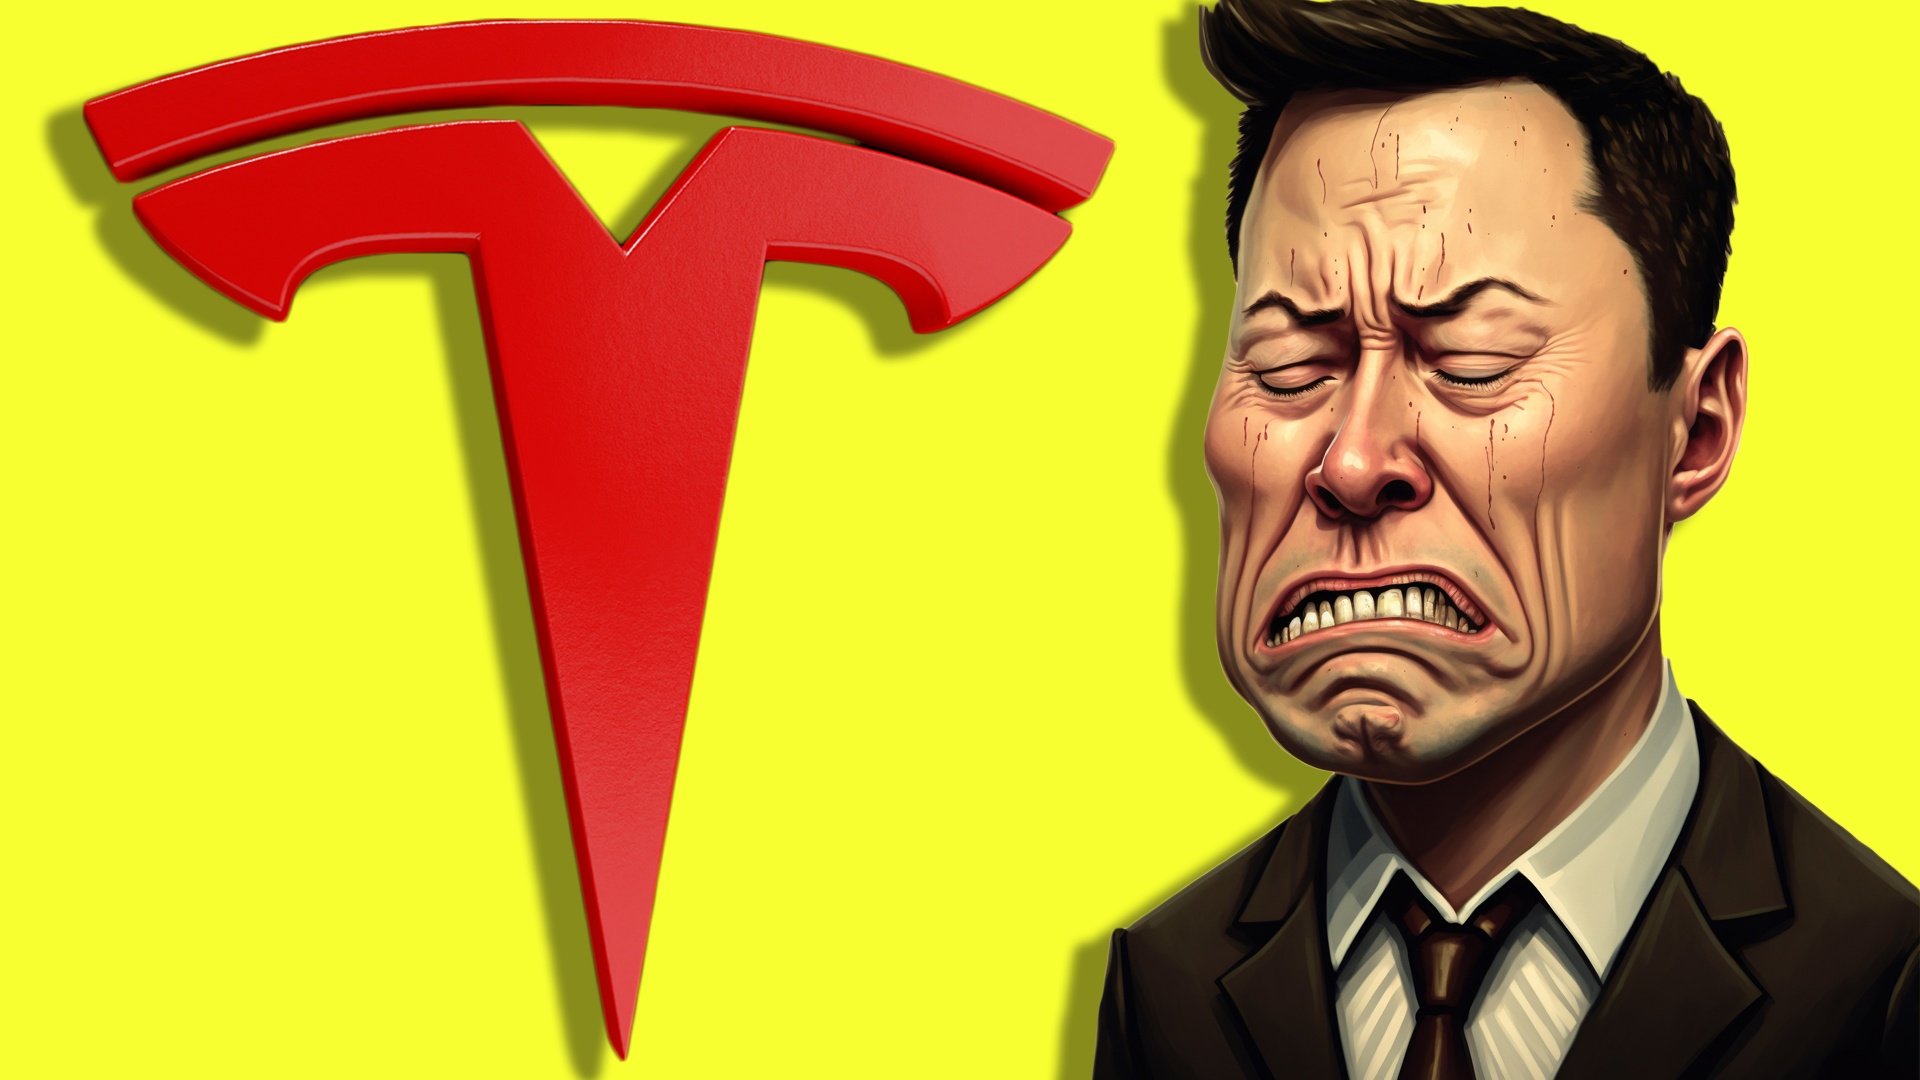 #Konkurrenz für Tesla: Das Wasserstoff-Auto lässt Elon Musk bald zittern?